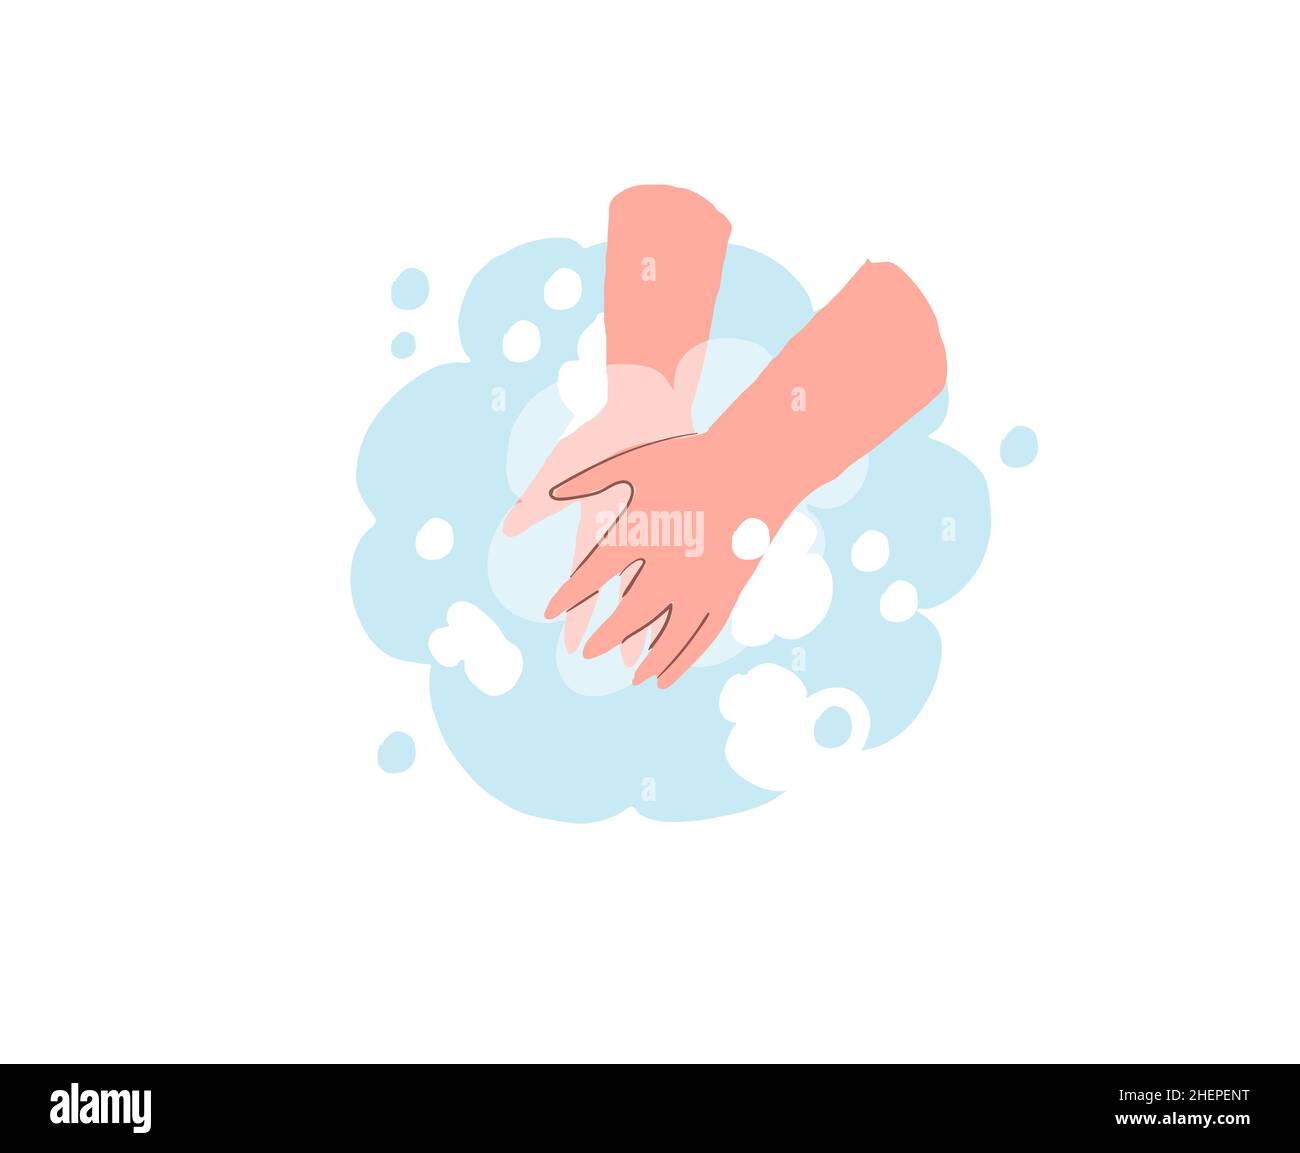 Dessin animé plat mains humaines utilisant le savon, coronavirus covid prévention vecteur d'illustration concept Illustration de Vecteur